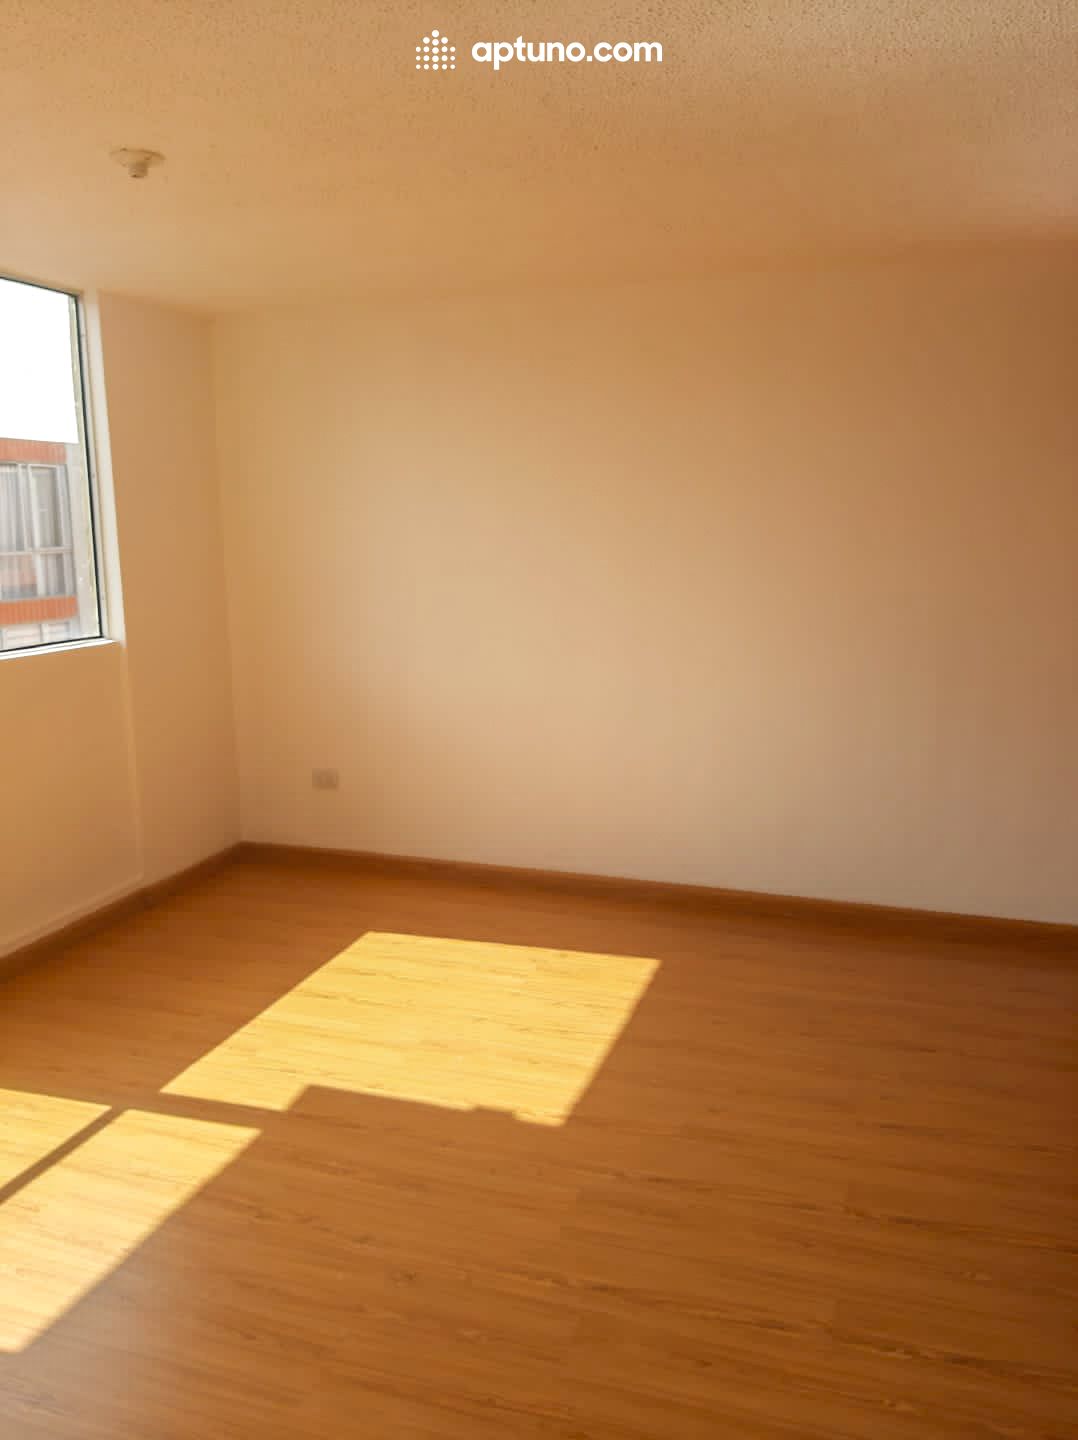 Apartamento en arriendo Tocancipá 62 m² - $ 950.000,00